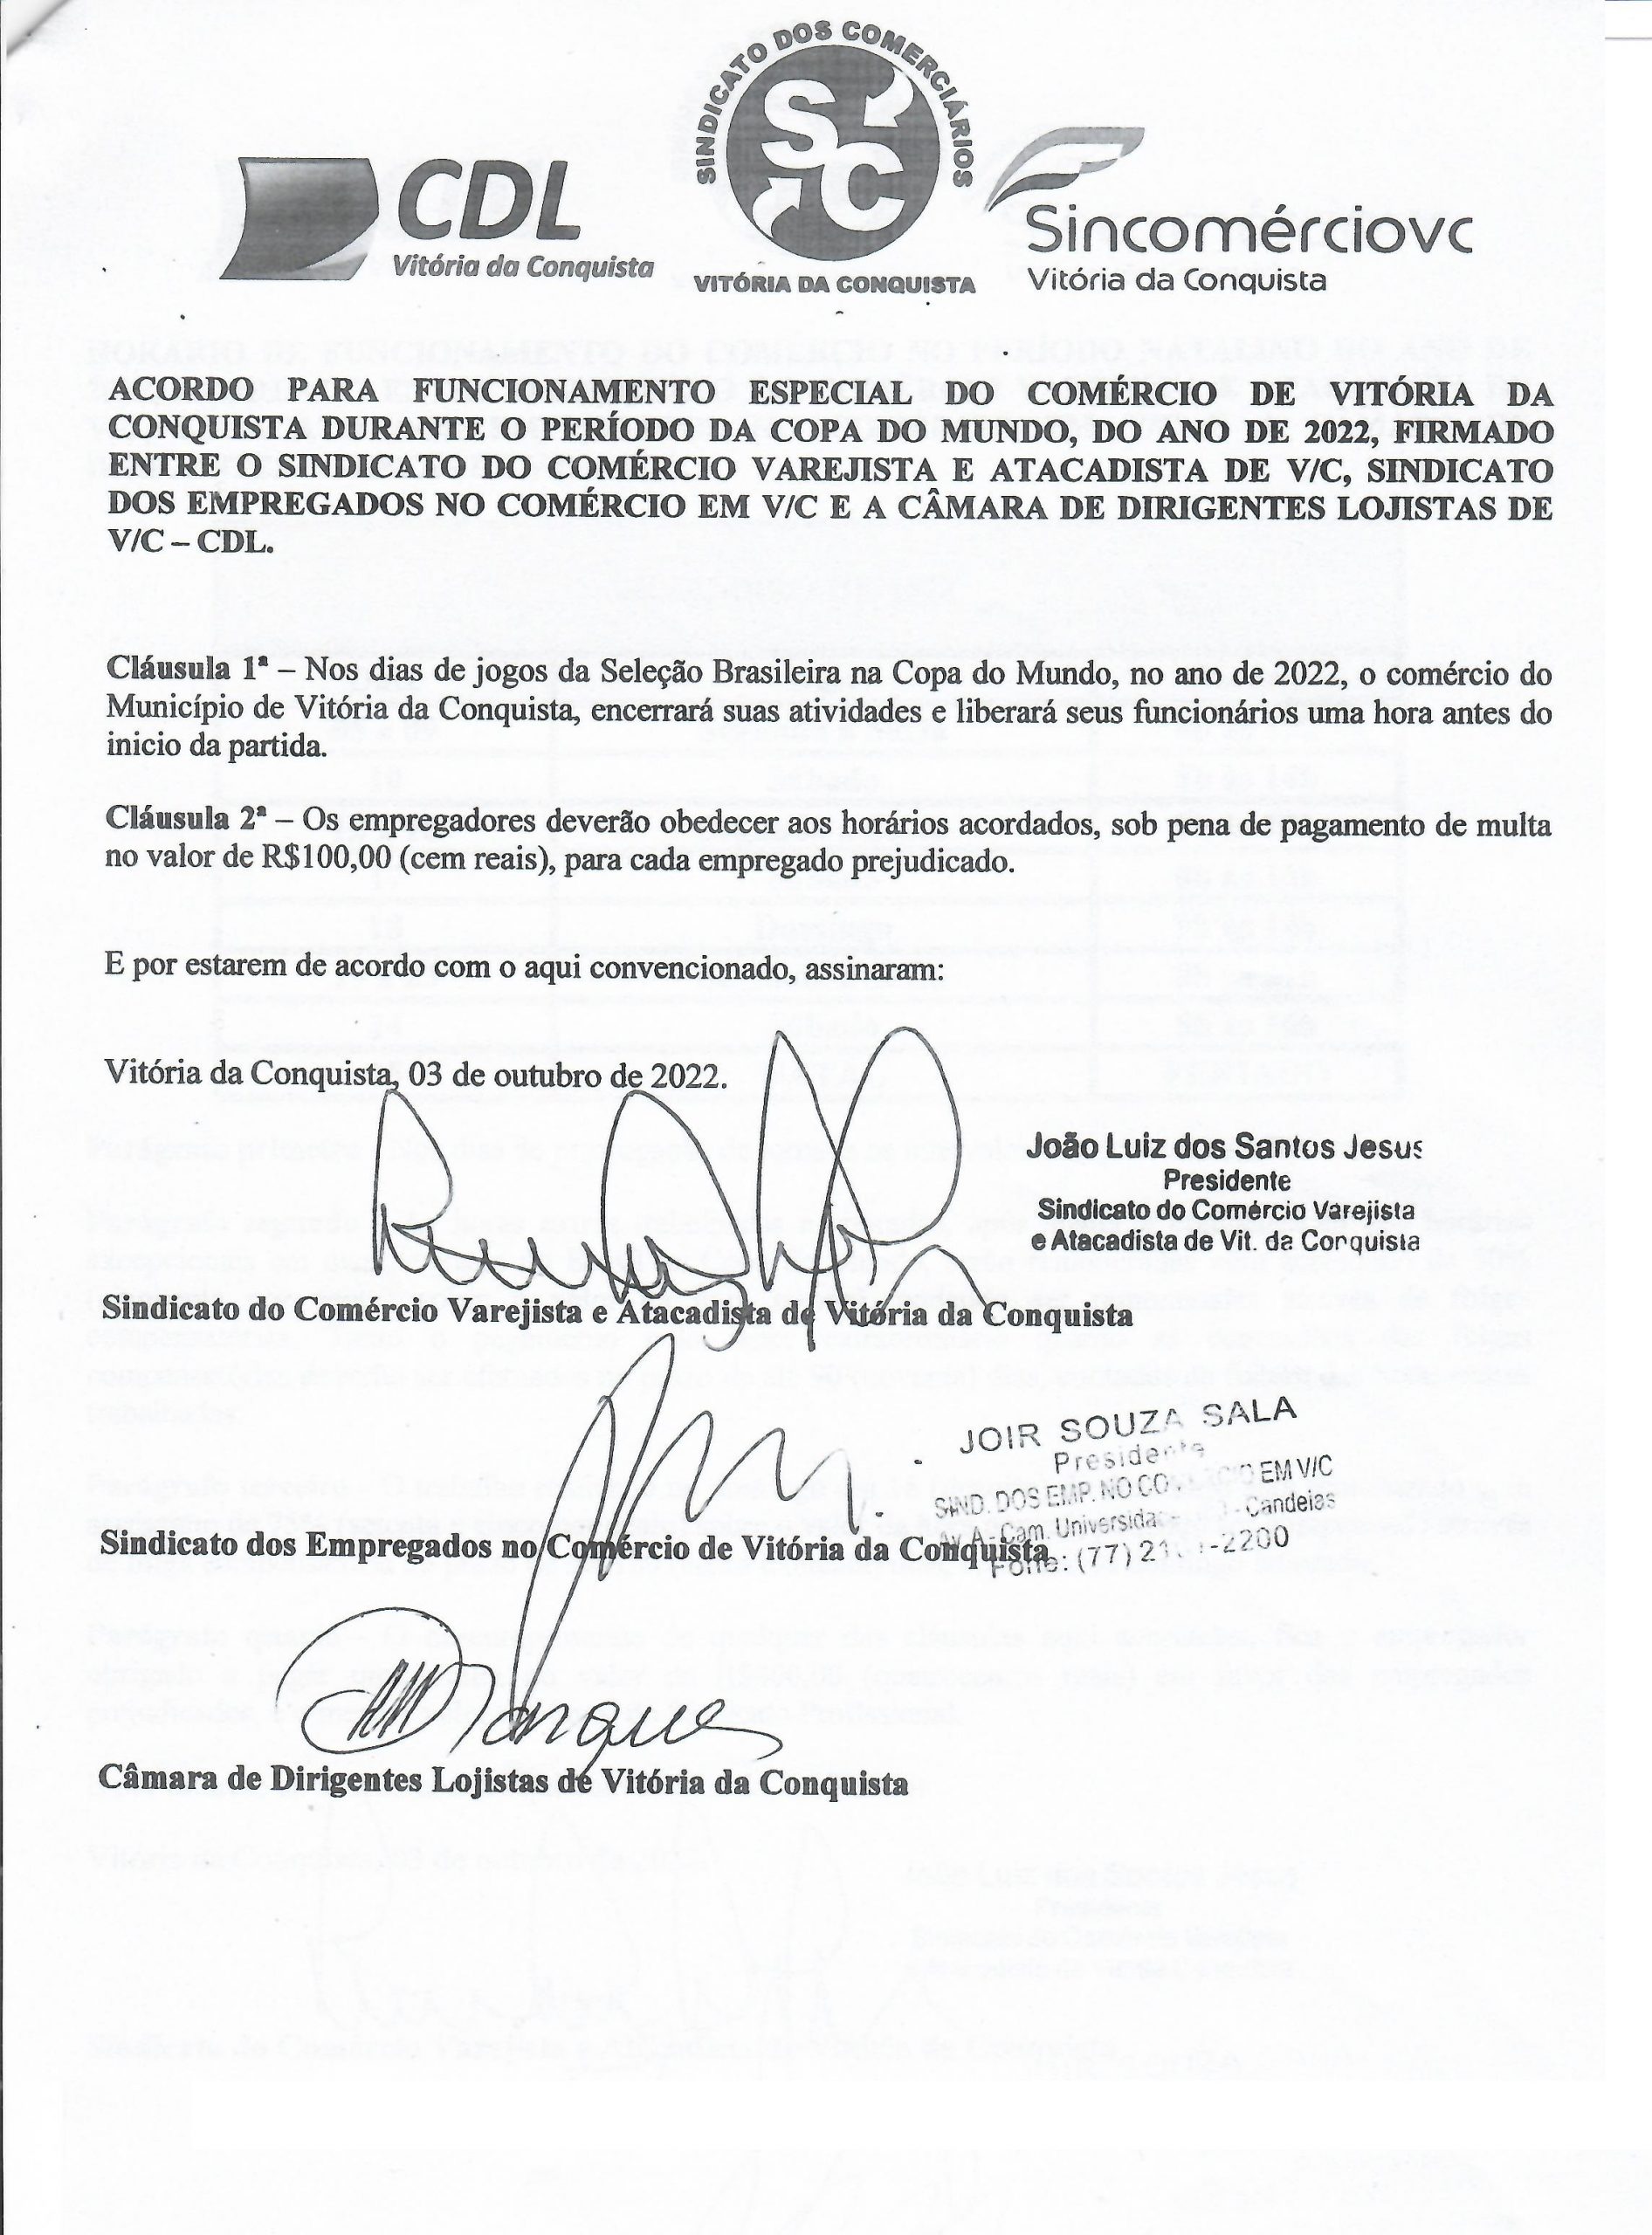 Horário especial de funcionamento do comércio no período junino - CDL  Vitoria da Conquista